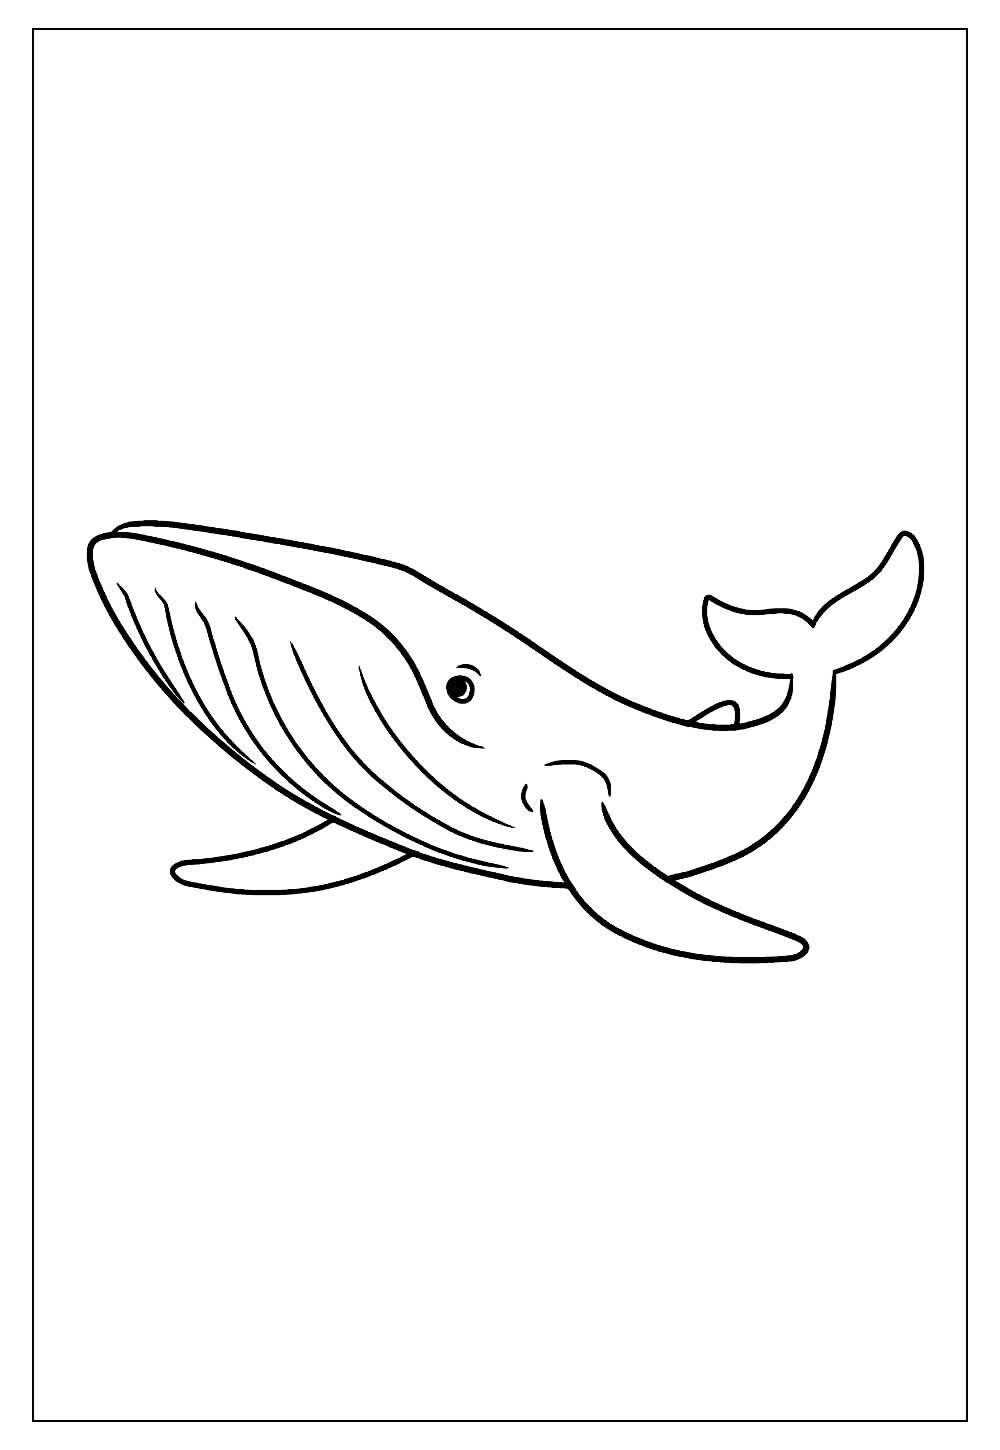 Desenho Para Colorir baleia - Imagens Grátis Para Imprimir - img 18167